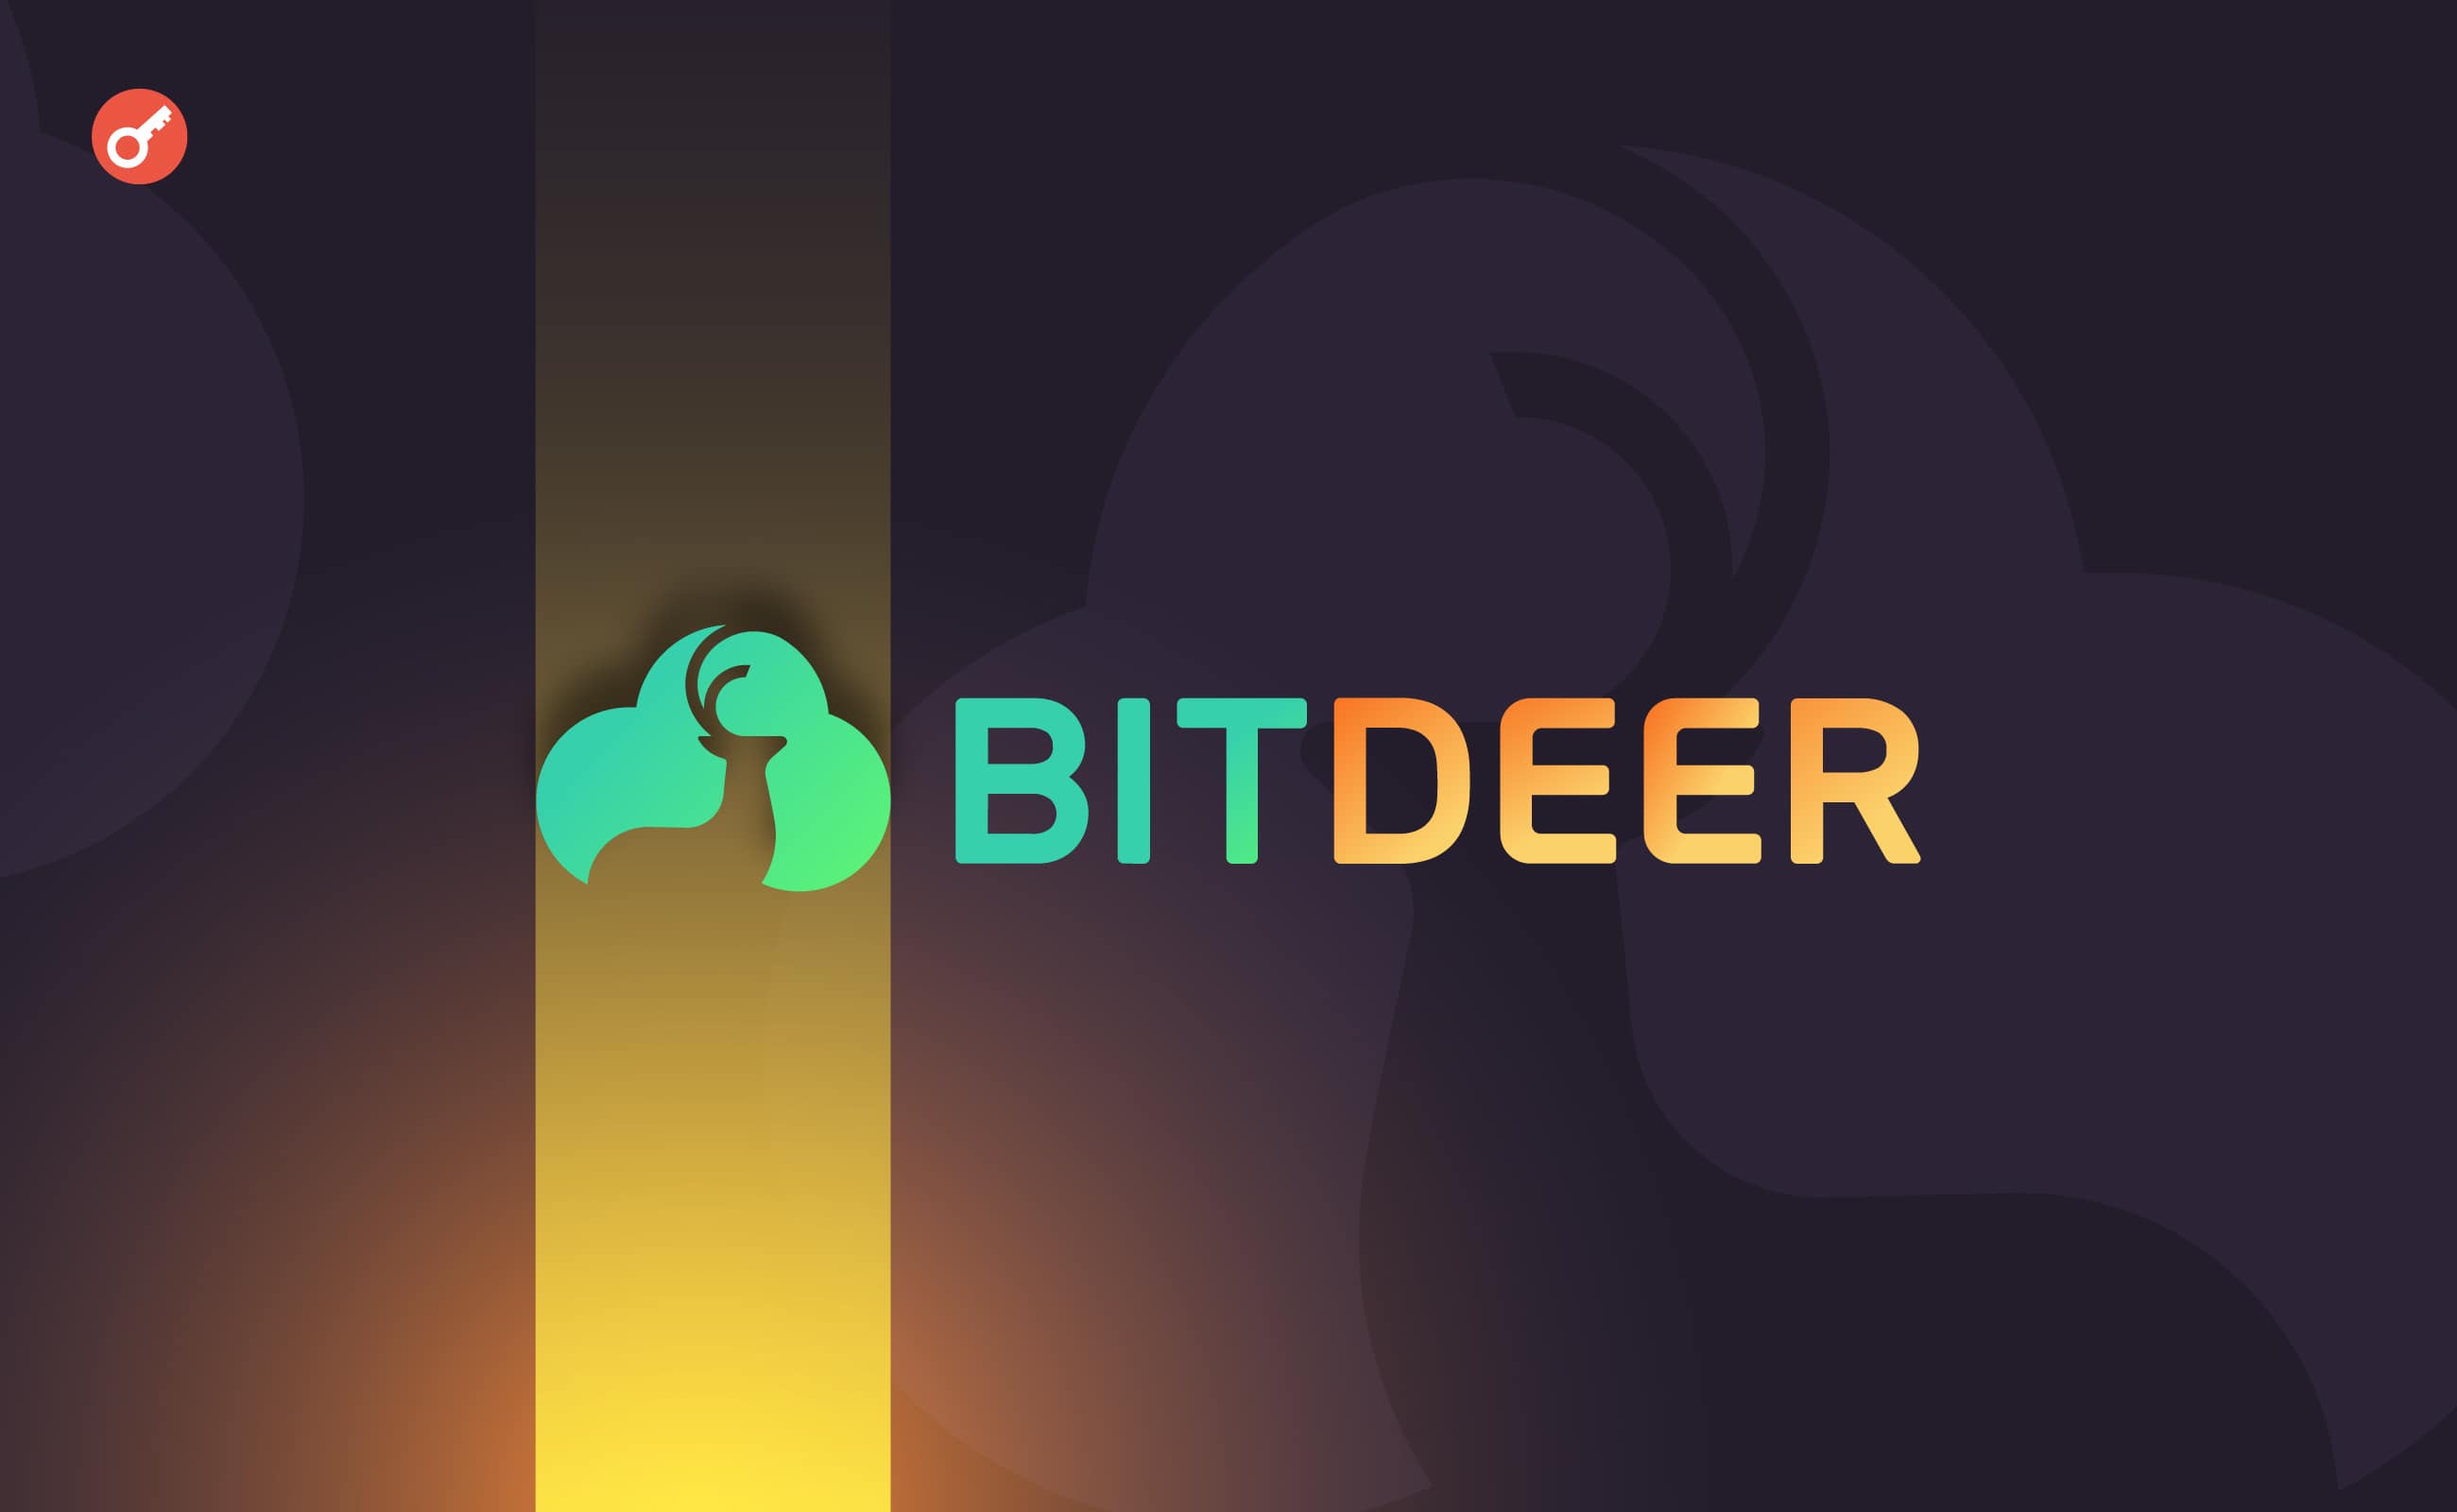 СМИ: биткоин-майнер Bitdeer планирует привлечь $100 млн инвестиций. Заглавный коллаж новости.